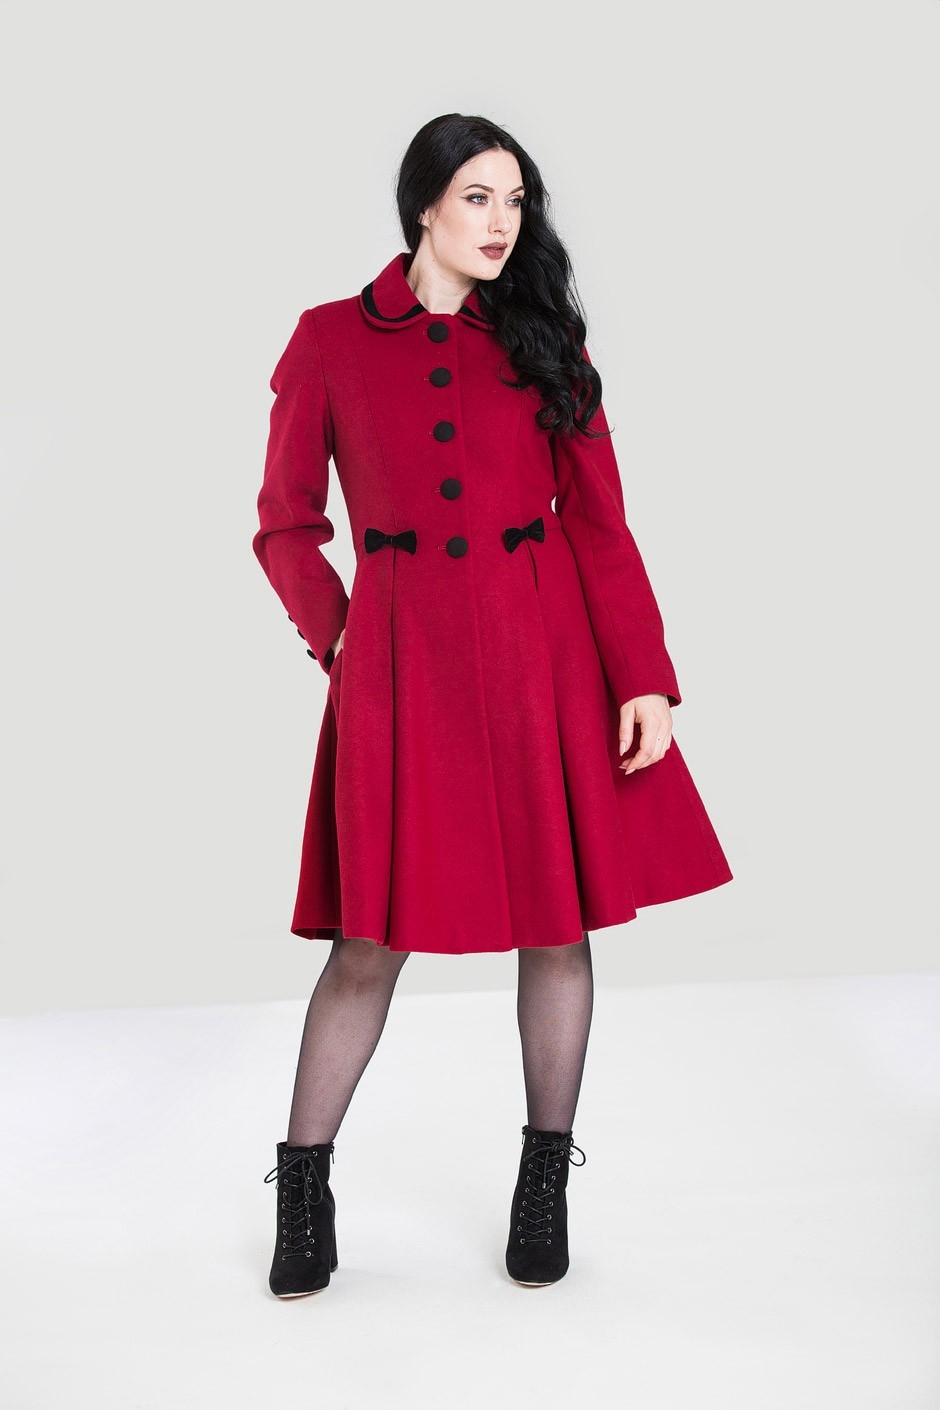 Olivia coat, rød: Lækker varm og frakke sort med små sløjfer - frakke, vi elsker, når der er gjort noget ud af det.